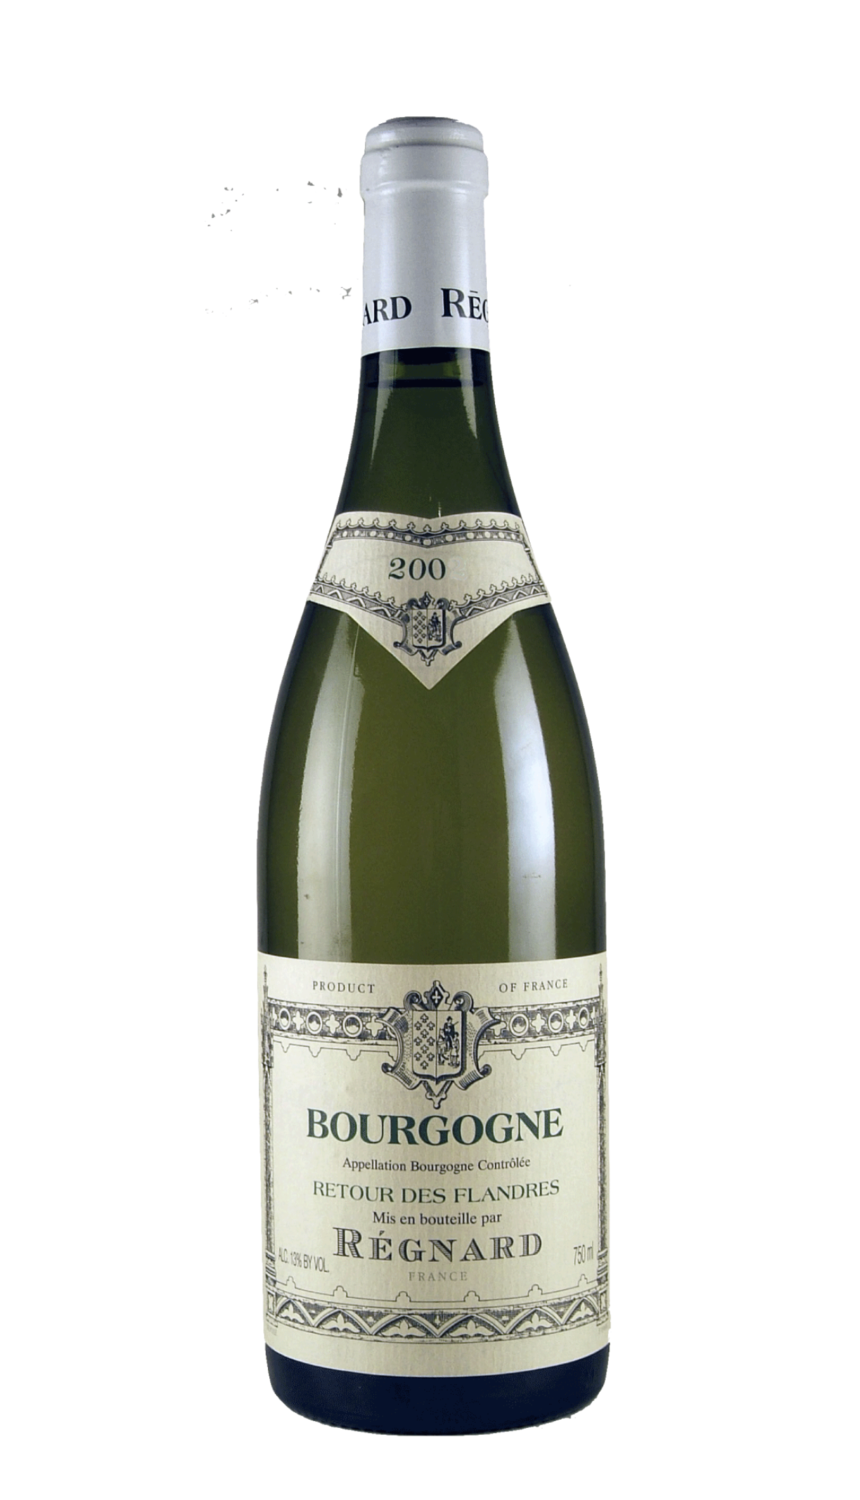 Retour des Flandres Blanc 2018 (Chardonnay) Borgogna Regnard-75cl